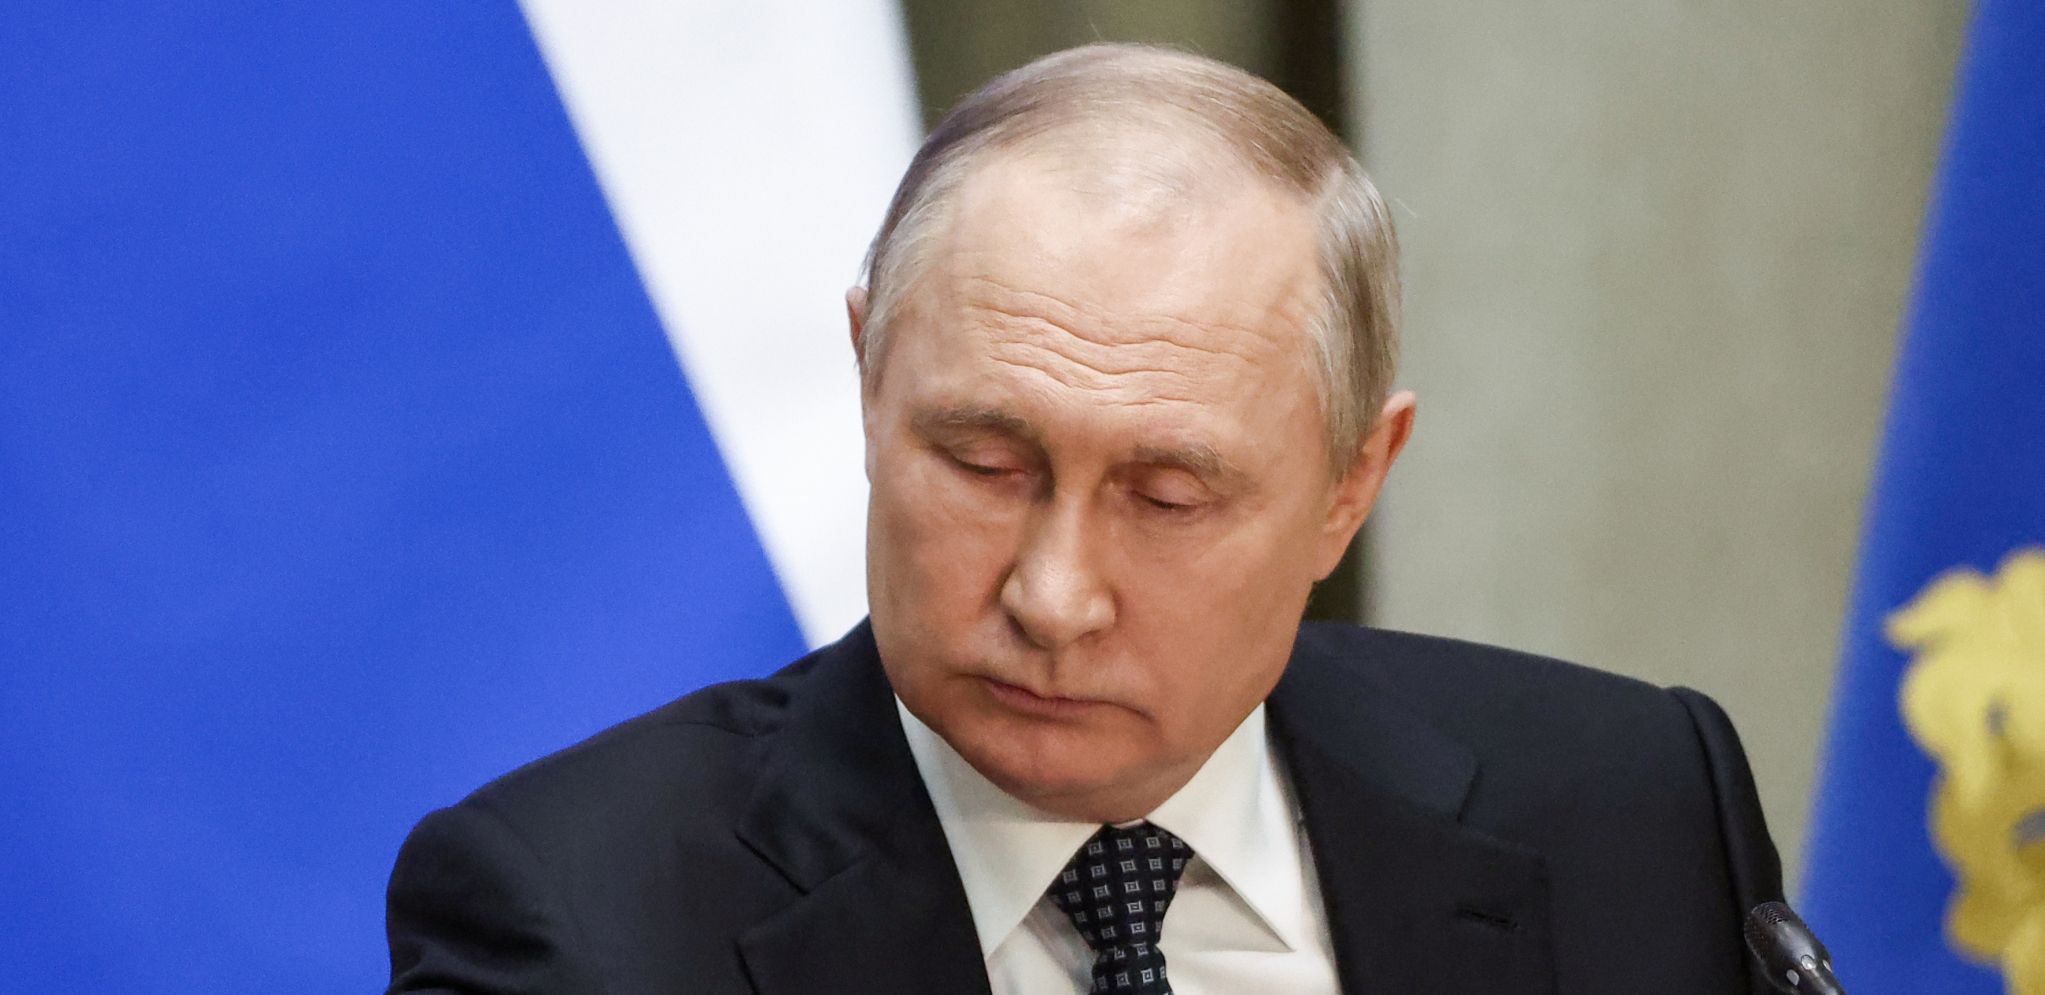 GARANCIJA NA IZVOZ ŽITA Vladimir Putin: Rusija obezbeđuje nesmetan prolaz brodova Ukrajini